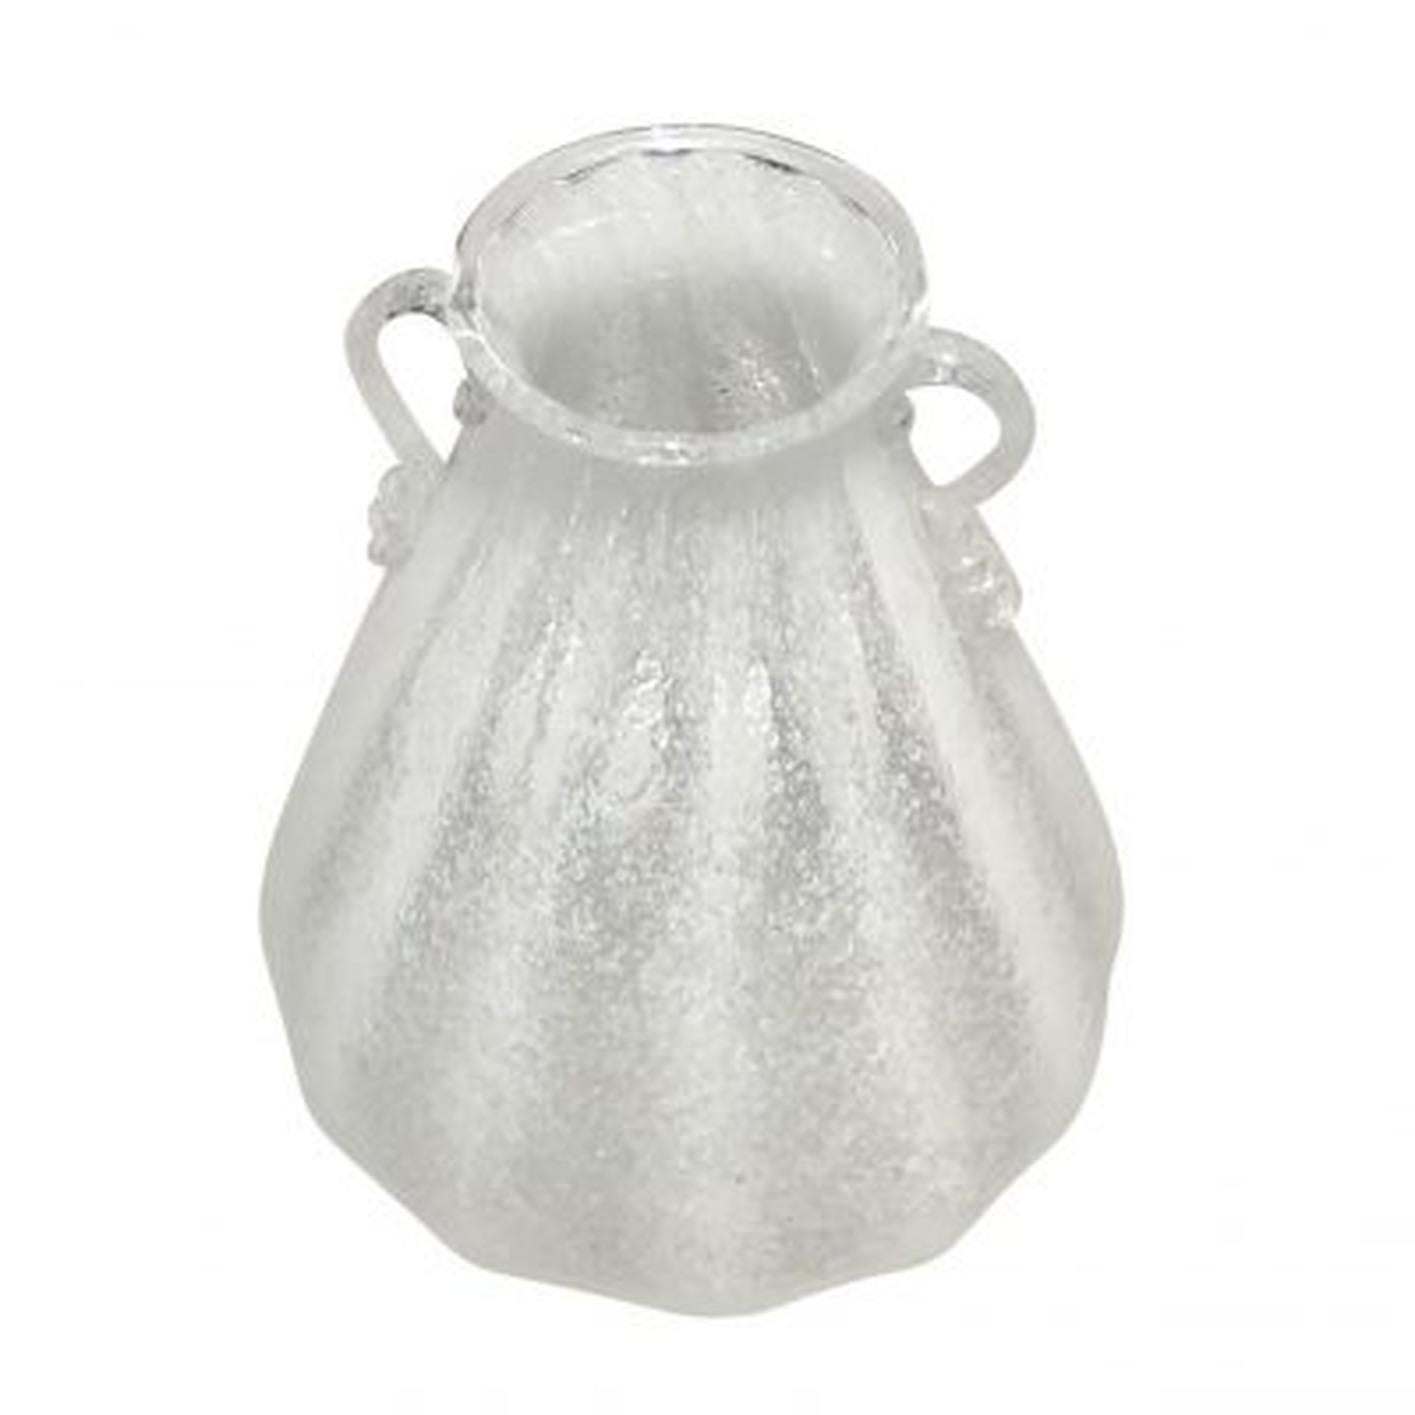 Un vase vintage Art Deco en verre Pulegoso de Murano, produit par Seguso Vetri D'Arte, en bon état. Usures dues à l'âge et à l'utilisation, vers 1925-1950 Murano, Italie.

La famille Seguso est un fabricant italien de verre de Murano, fondé par